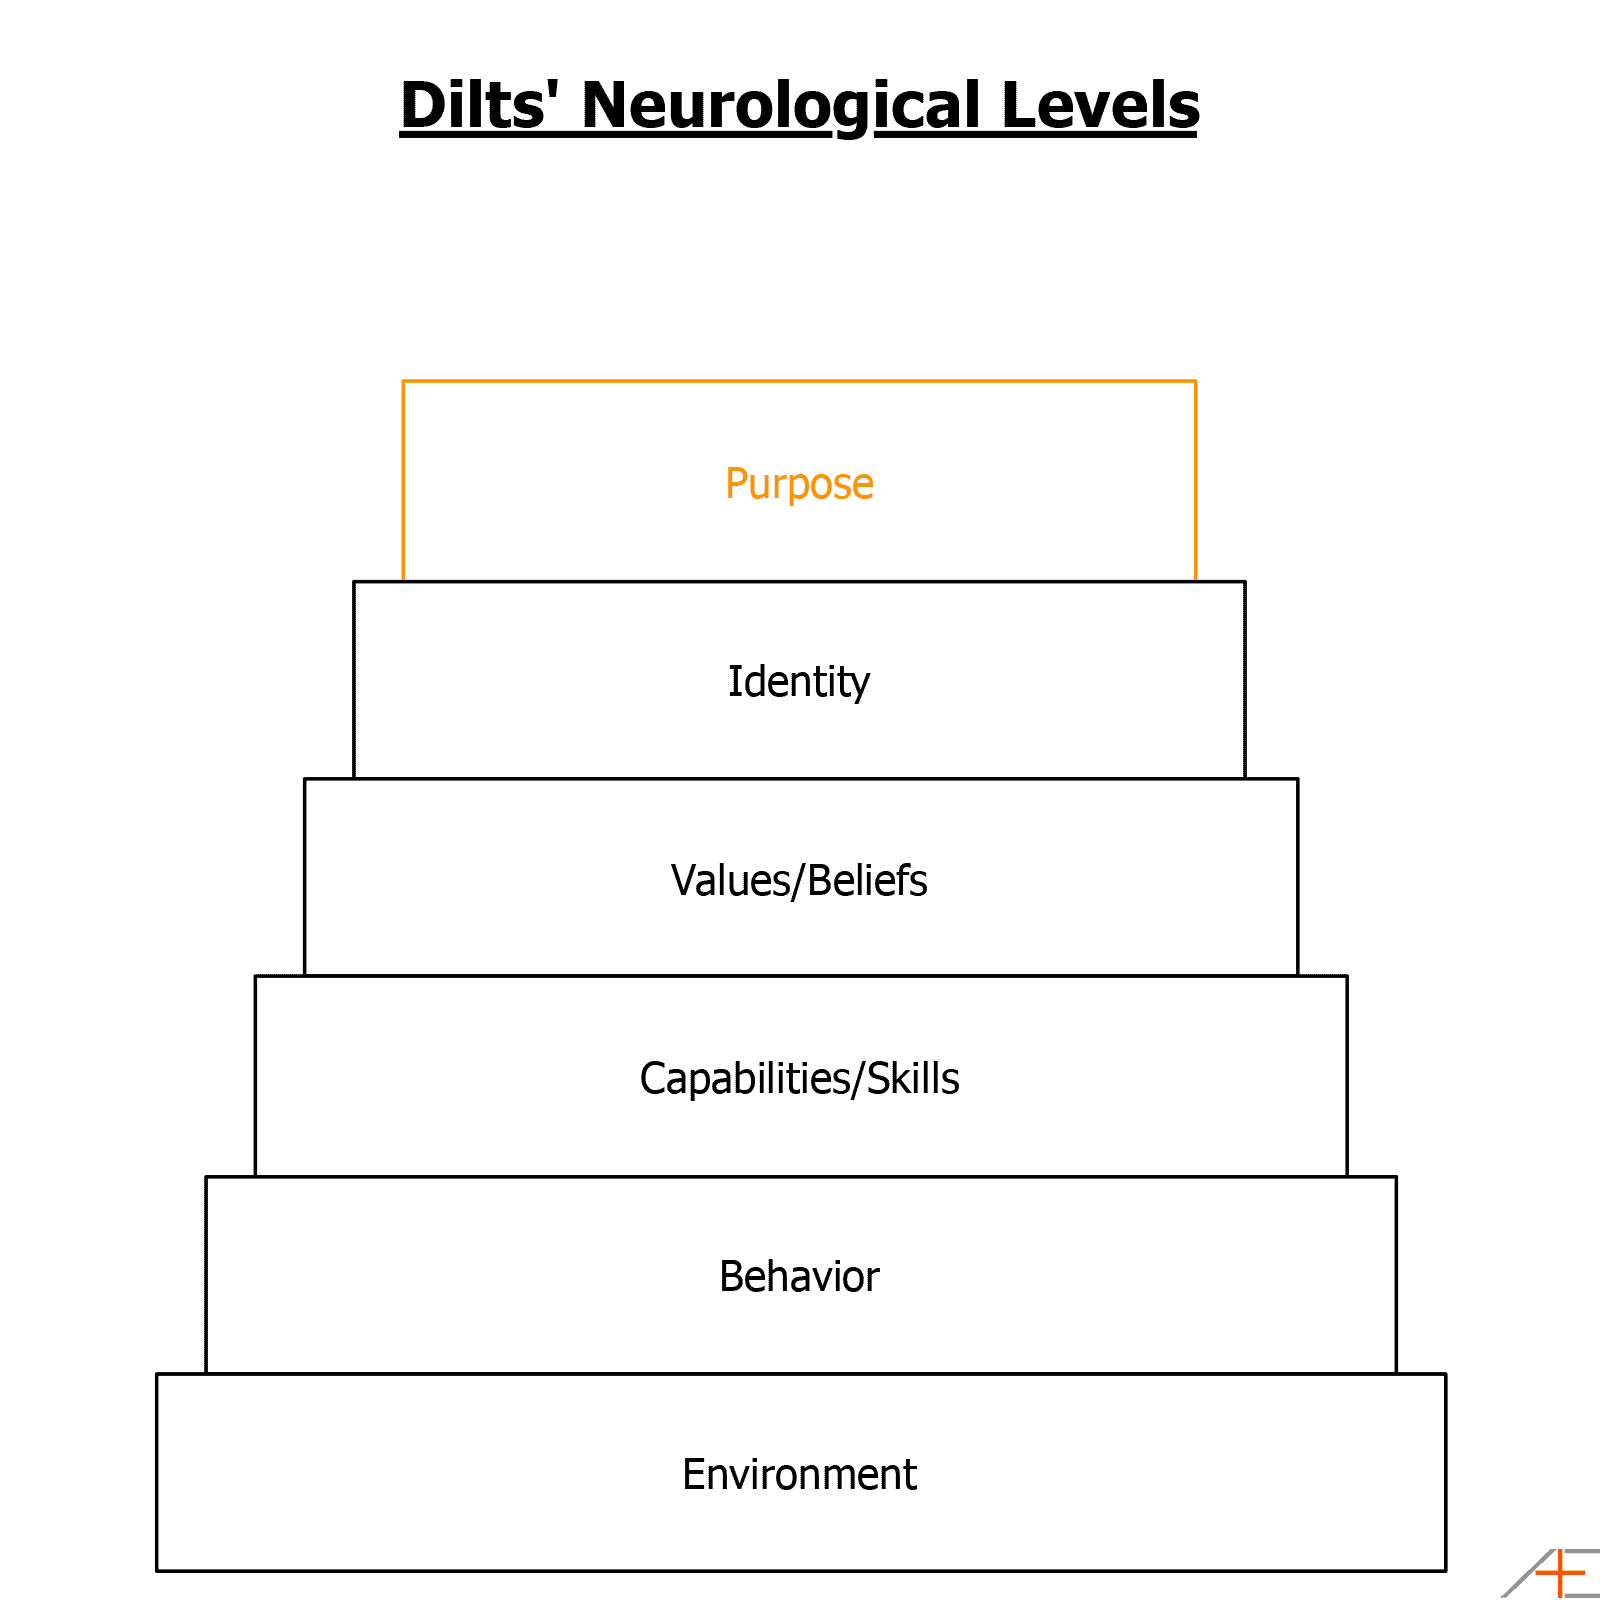 dilts-neurological-levels